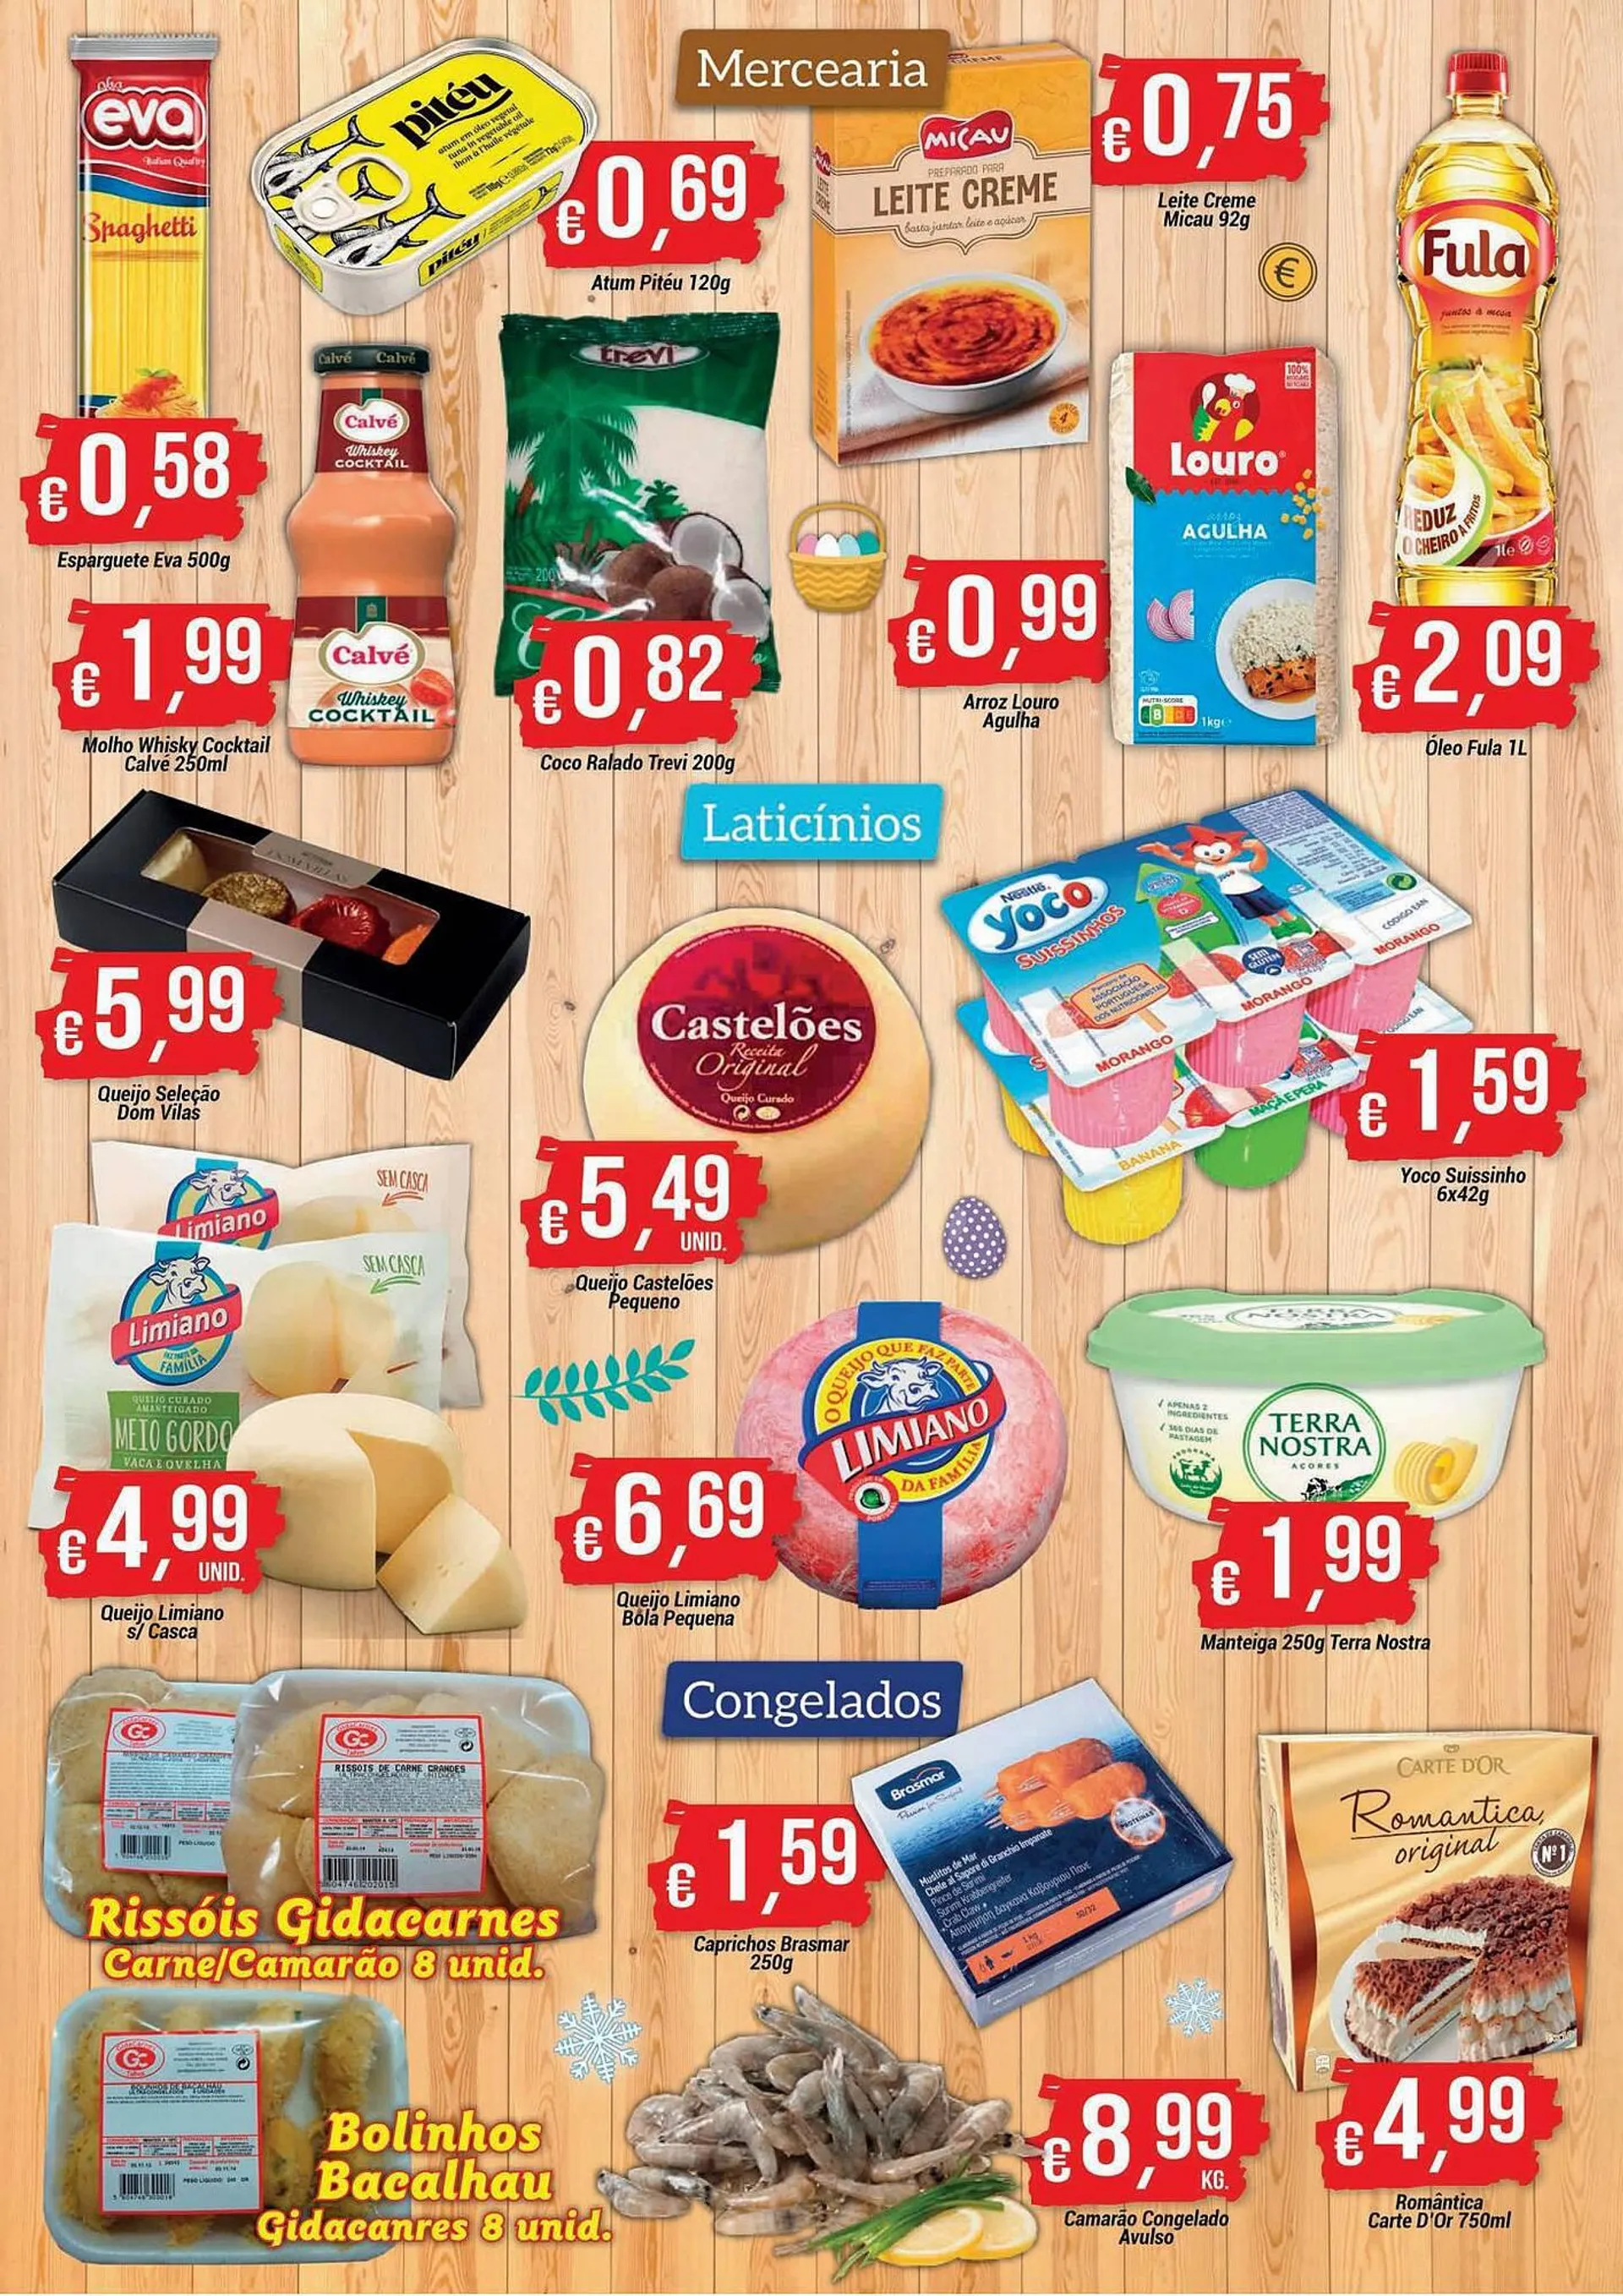 Folheto GidaCarnes Supermercados - 2